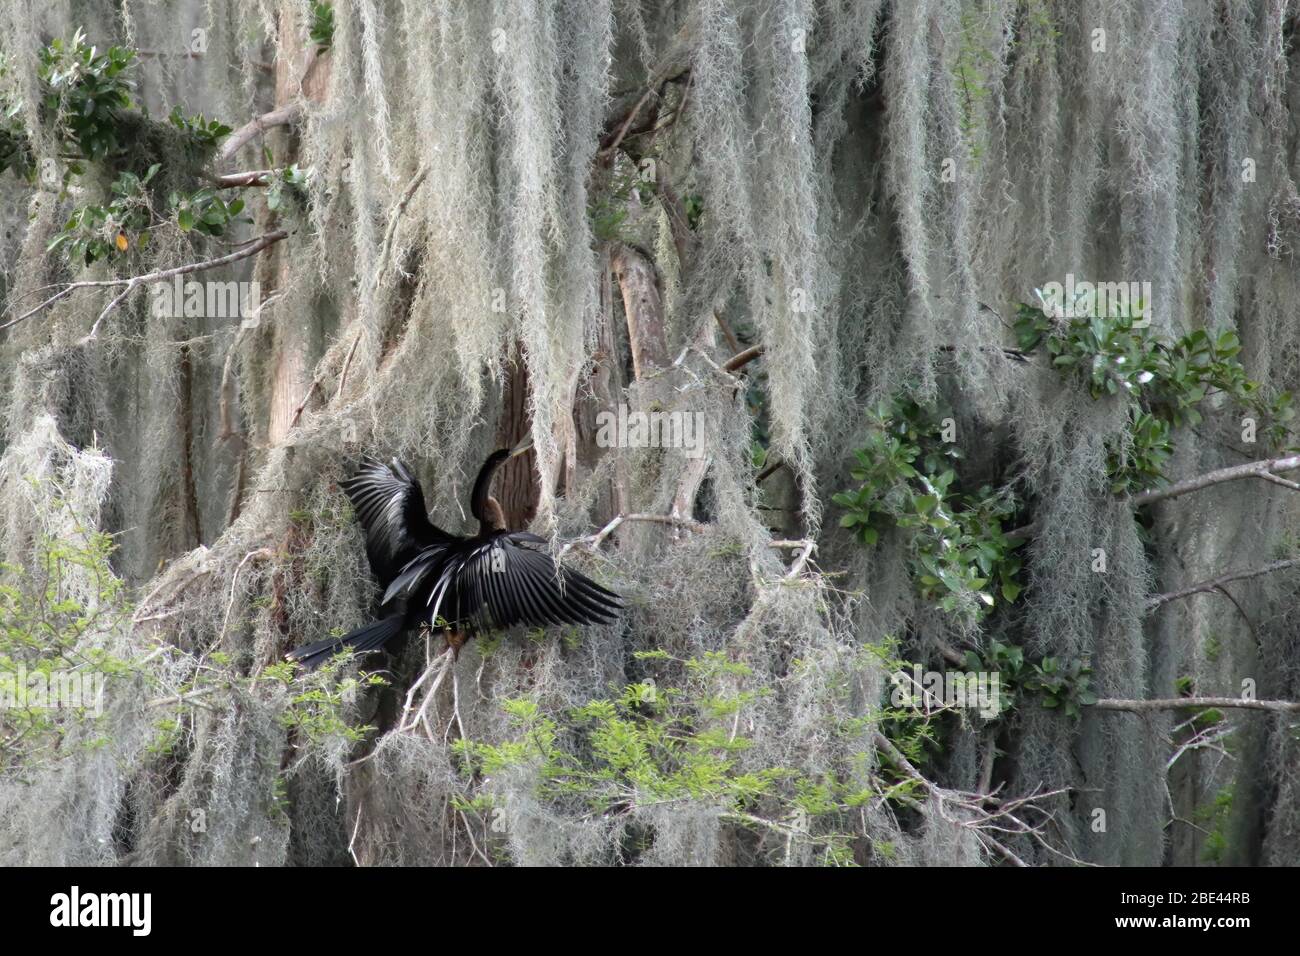 L'oiseau d'Anhinga s'est fané sur un arbre avec des mousses espagnoles en cascade. Lac Wales, Floride, États-Unis Banque D'Images